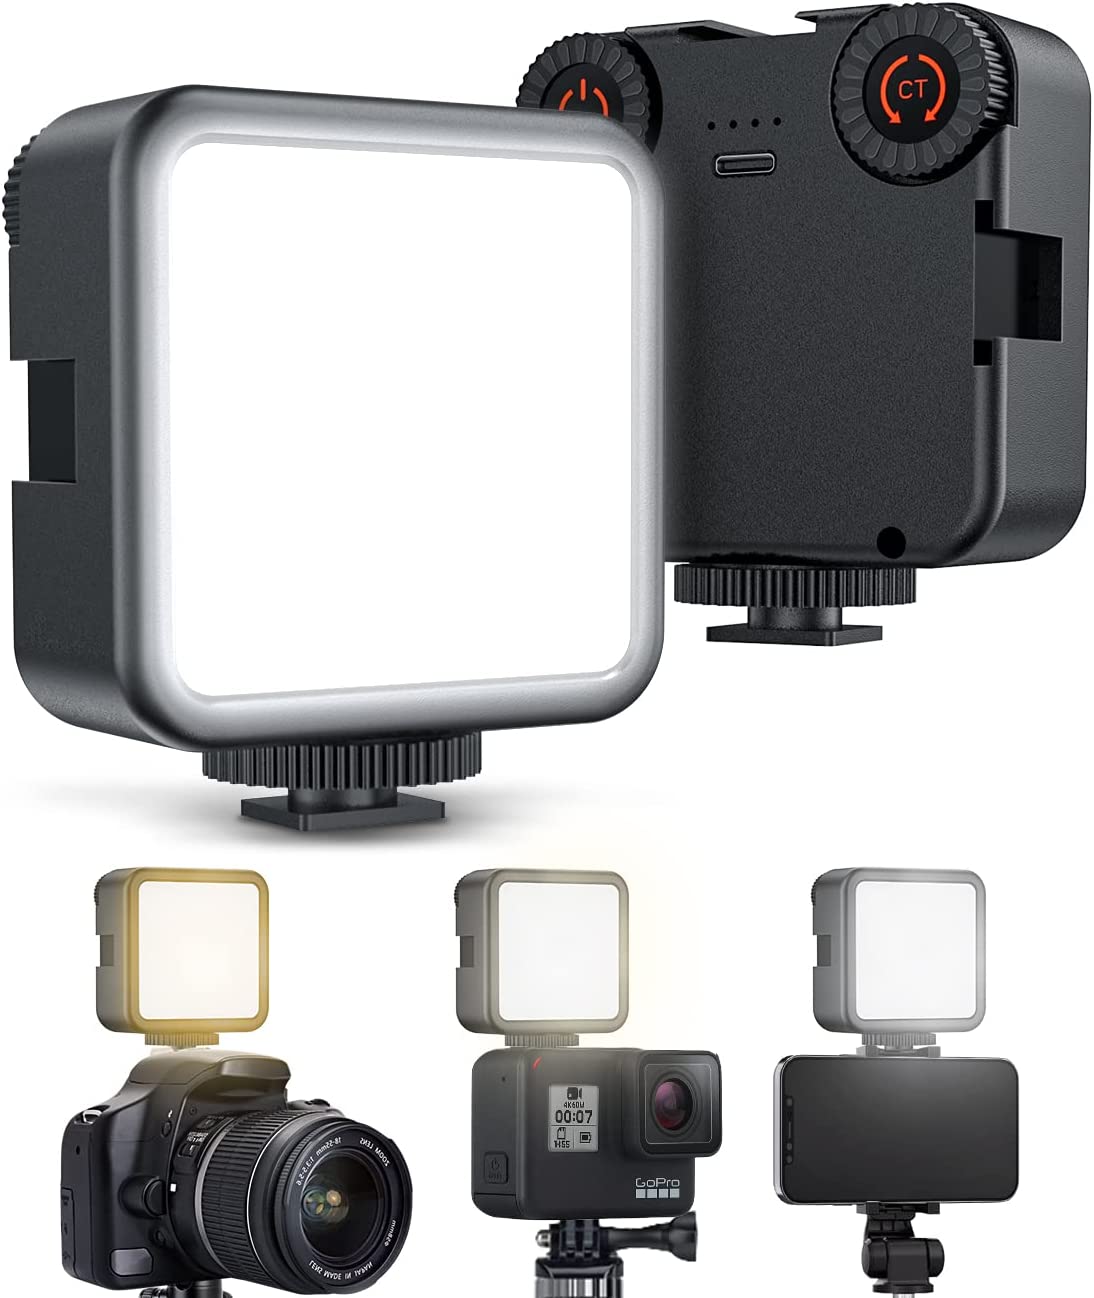 LEDビデオライト 撮影ライト カメラ